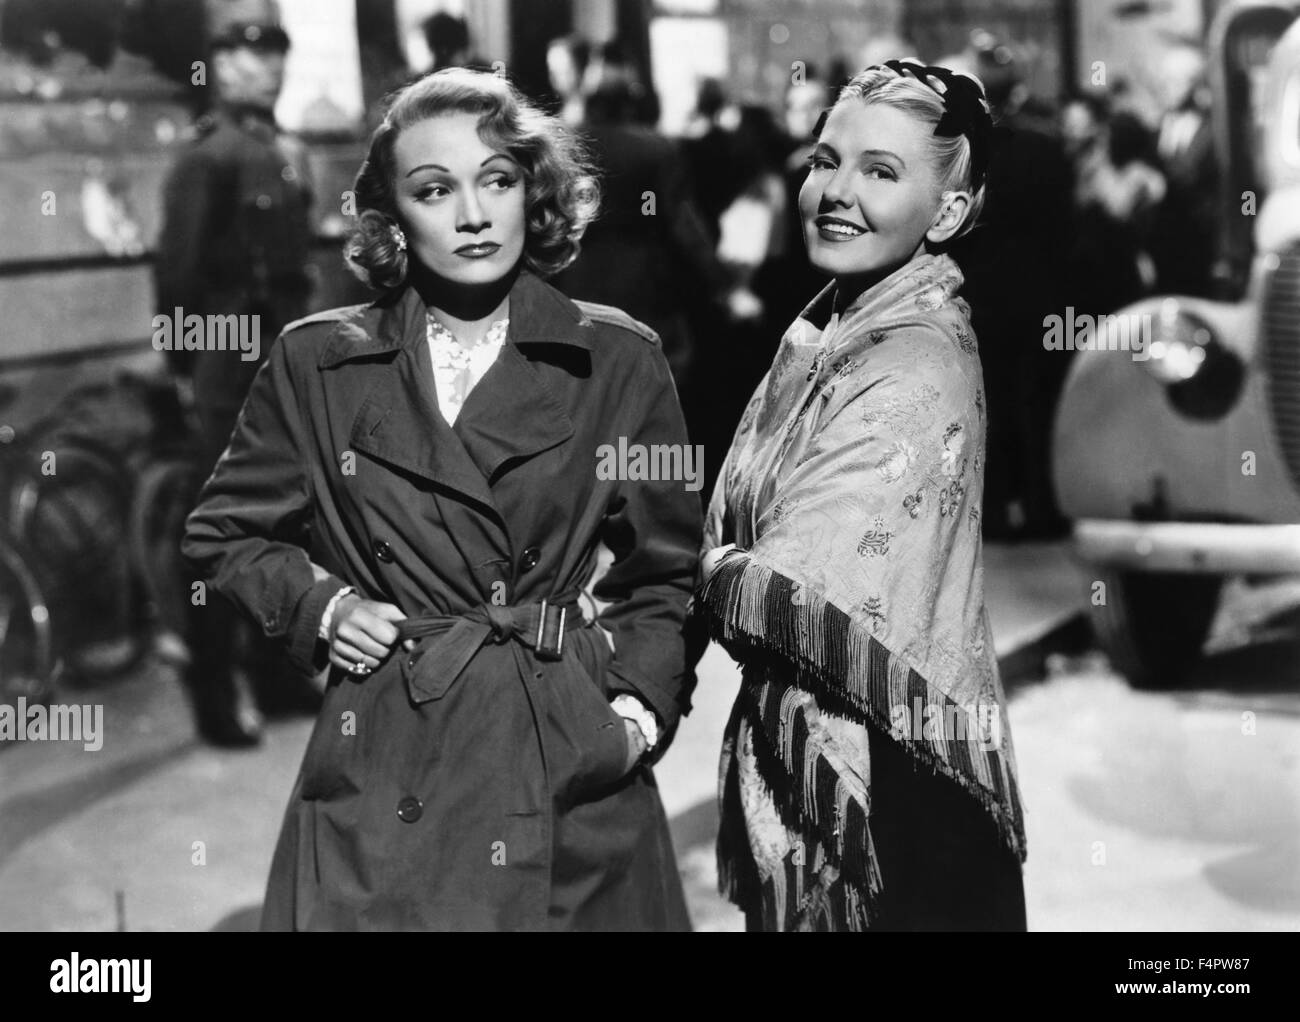 Marlene Dietrich y Jean Arthur / A Foreign Affair / 1948 dirigida por Billy Wilder [Paramount Pictures] Foto de stock